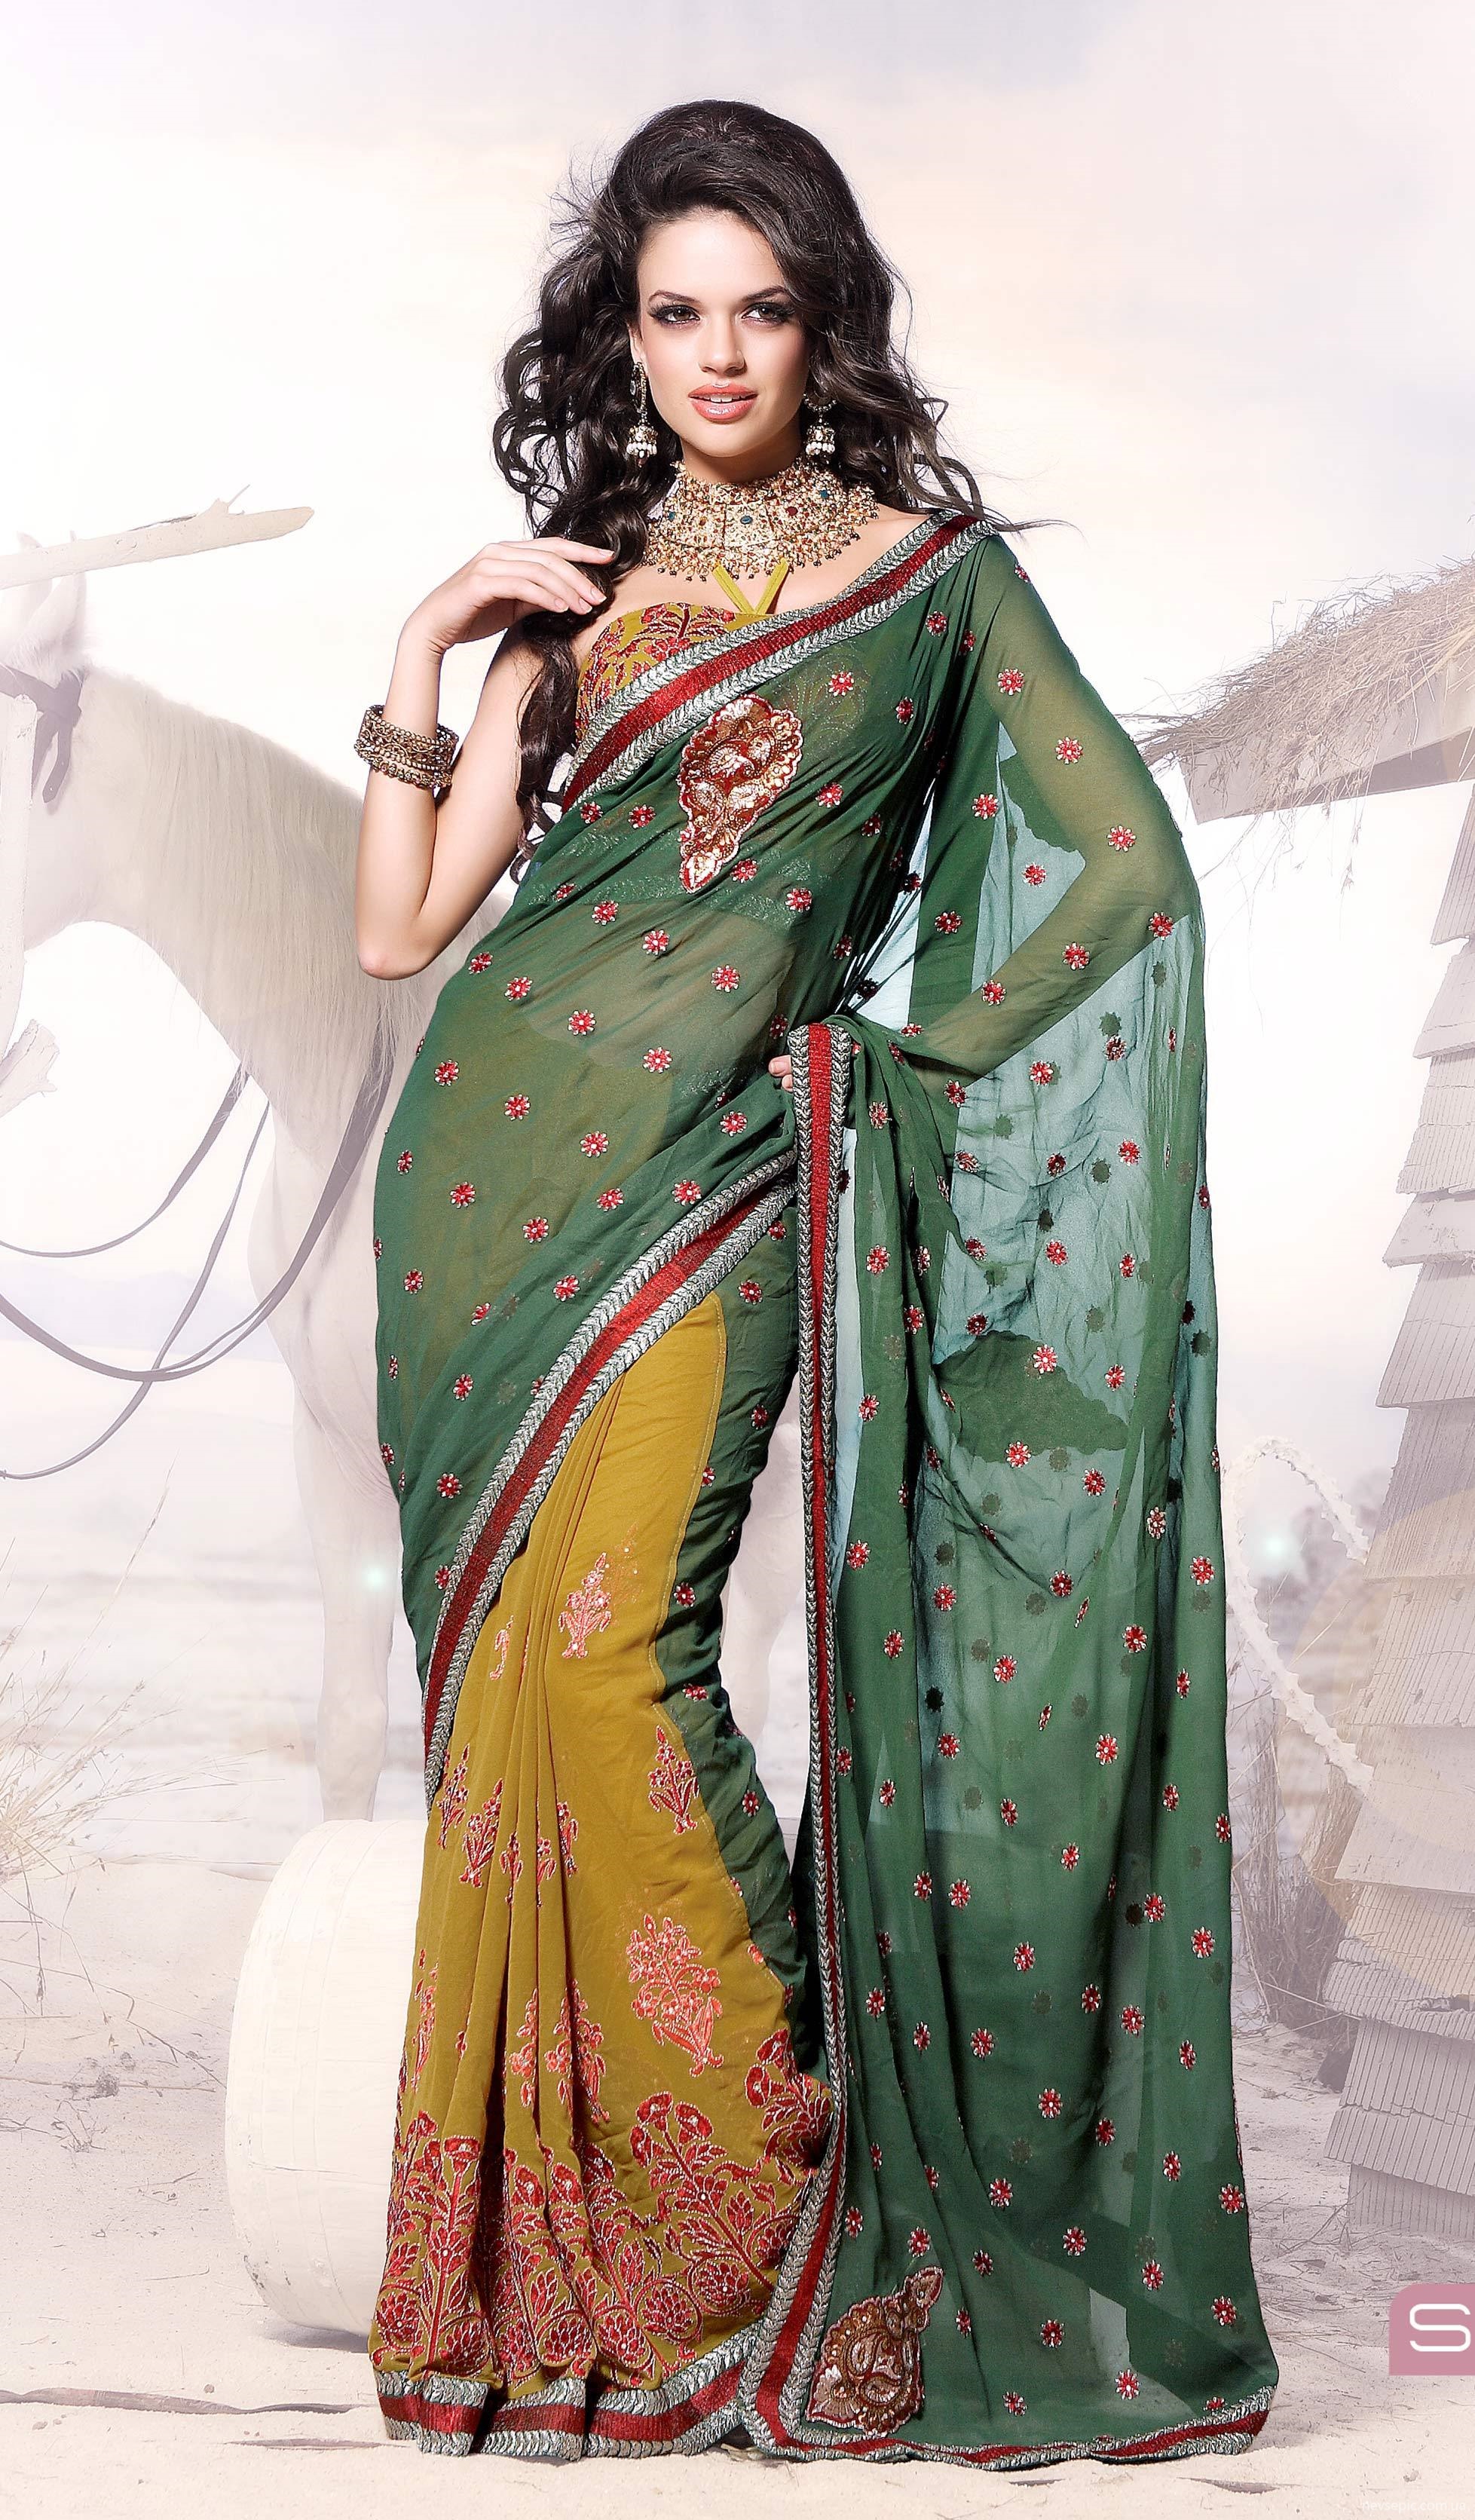 Другое название востока. Национальная одежда Индии Сари. Индийский костюм Сари. Сари одежда женщин в Индии. Сари — Национальная женская одежда Индии.